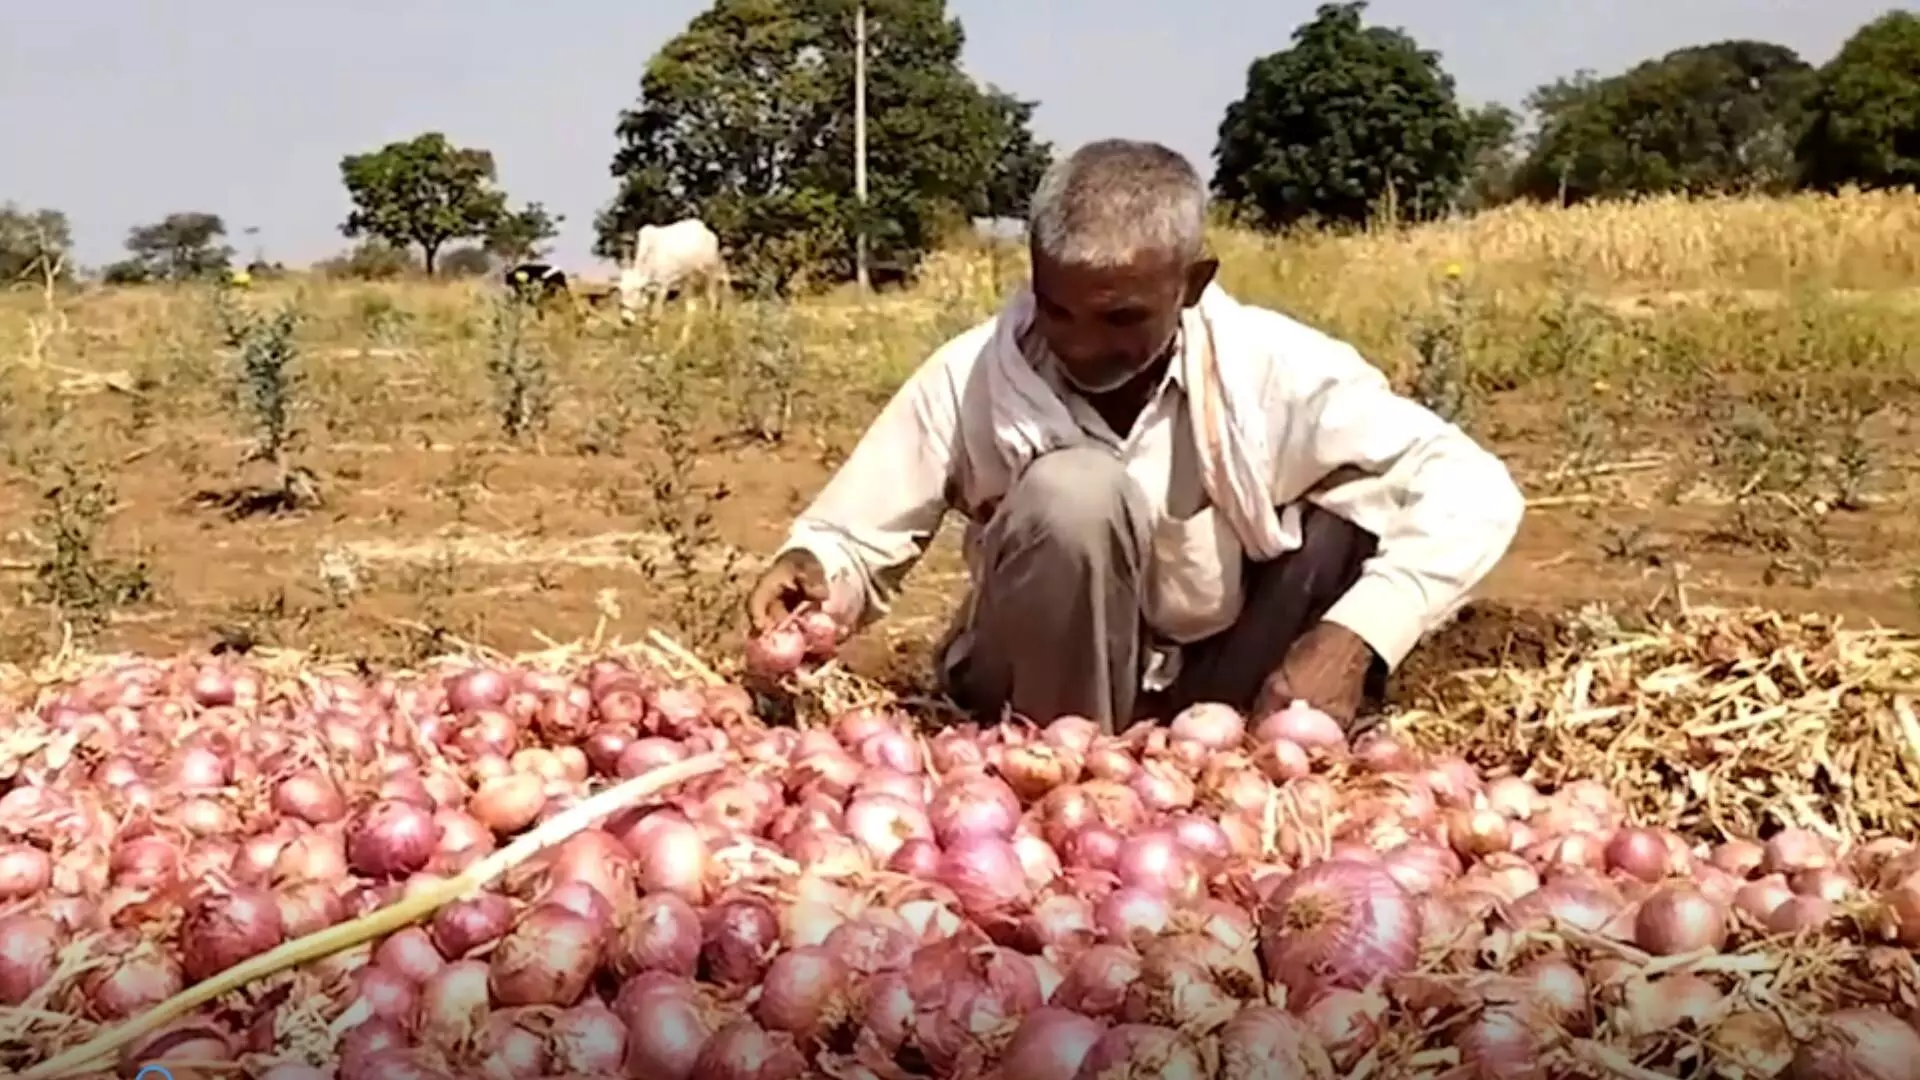 साडेतीन टन कांदा विकला, १८०० रुपये शेतकऱ्यालाच भरावे लागले